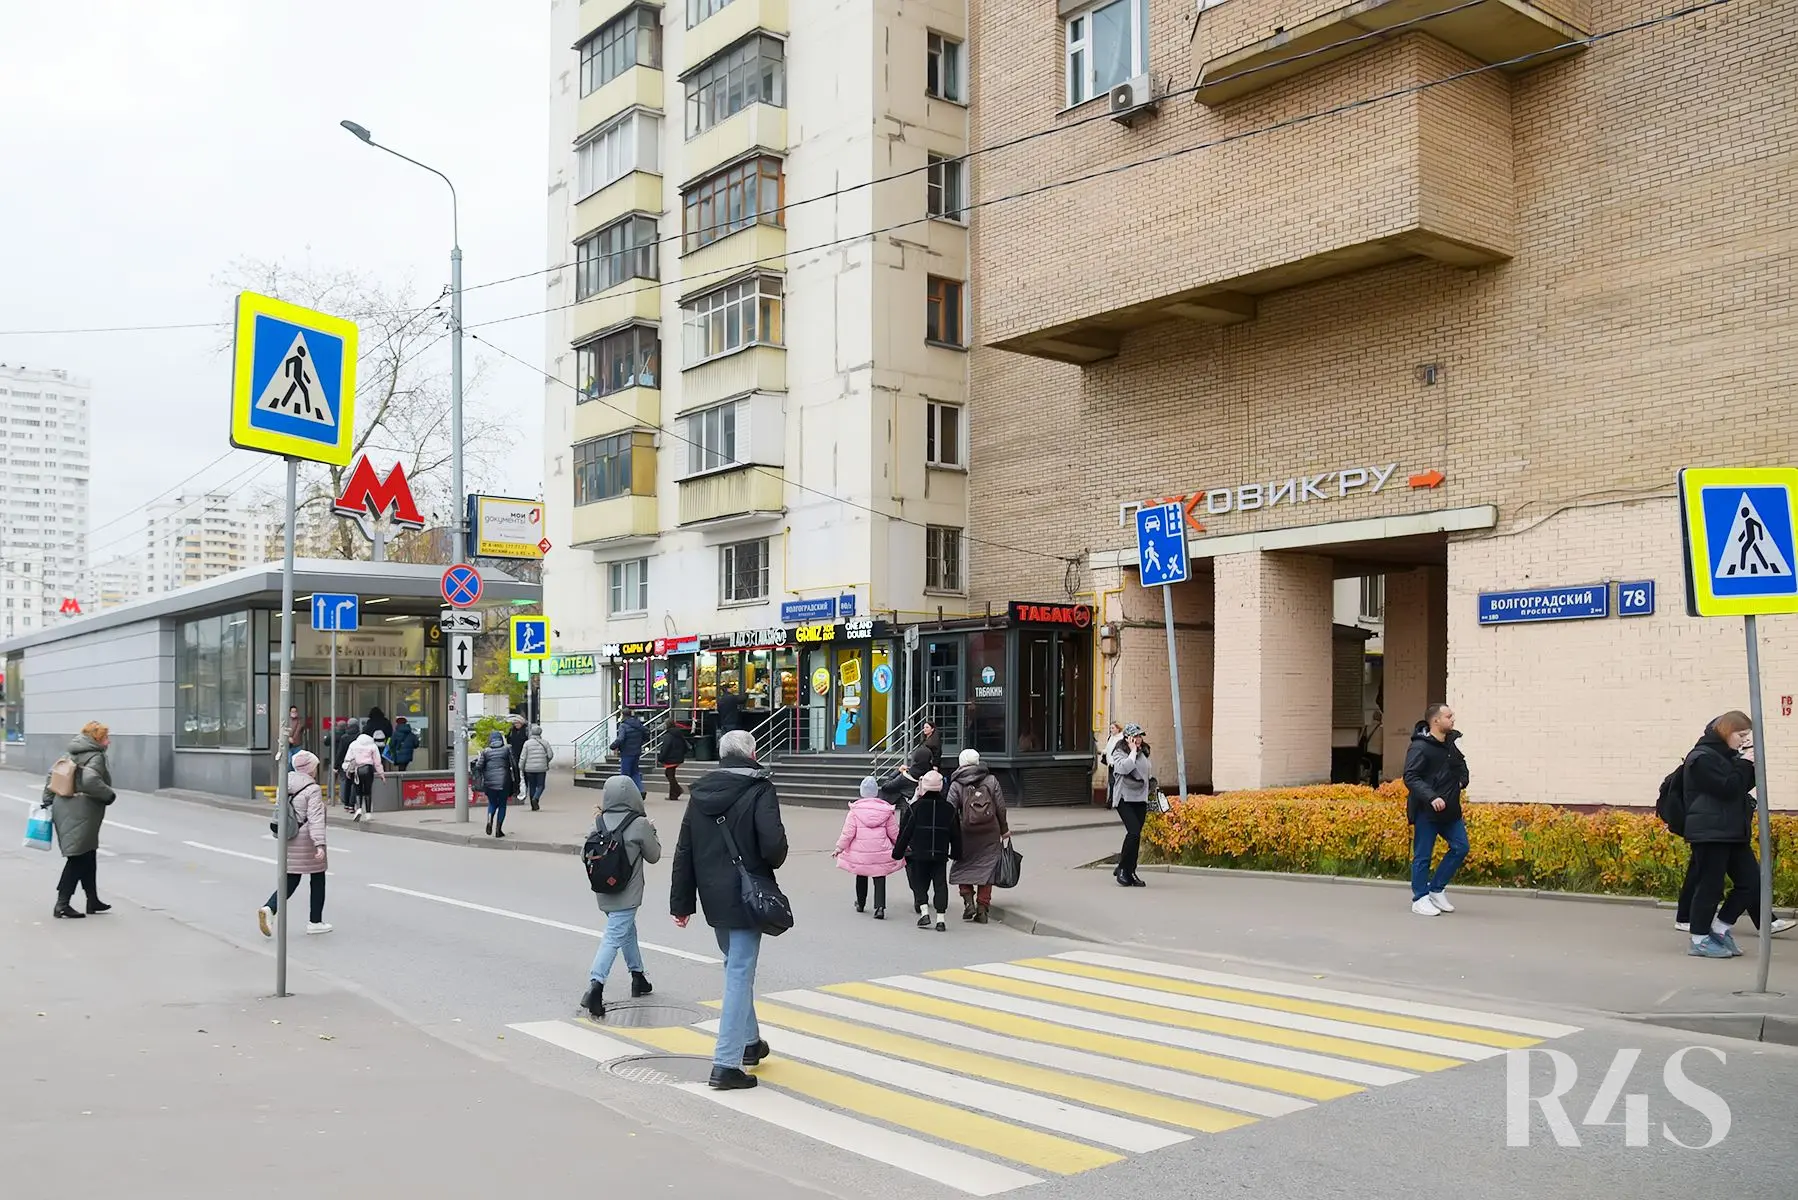 Продажа торгового помещения площадью 28.2 м2 в Москве: Волгоградский проспект, 80/2к1 R4S | Realty4Sale